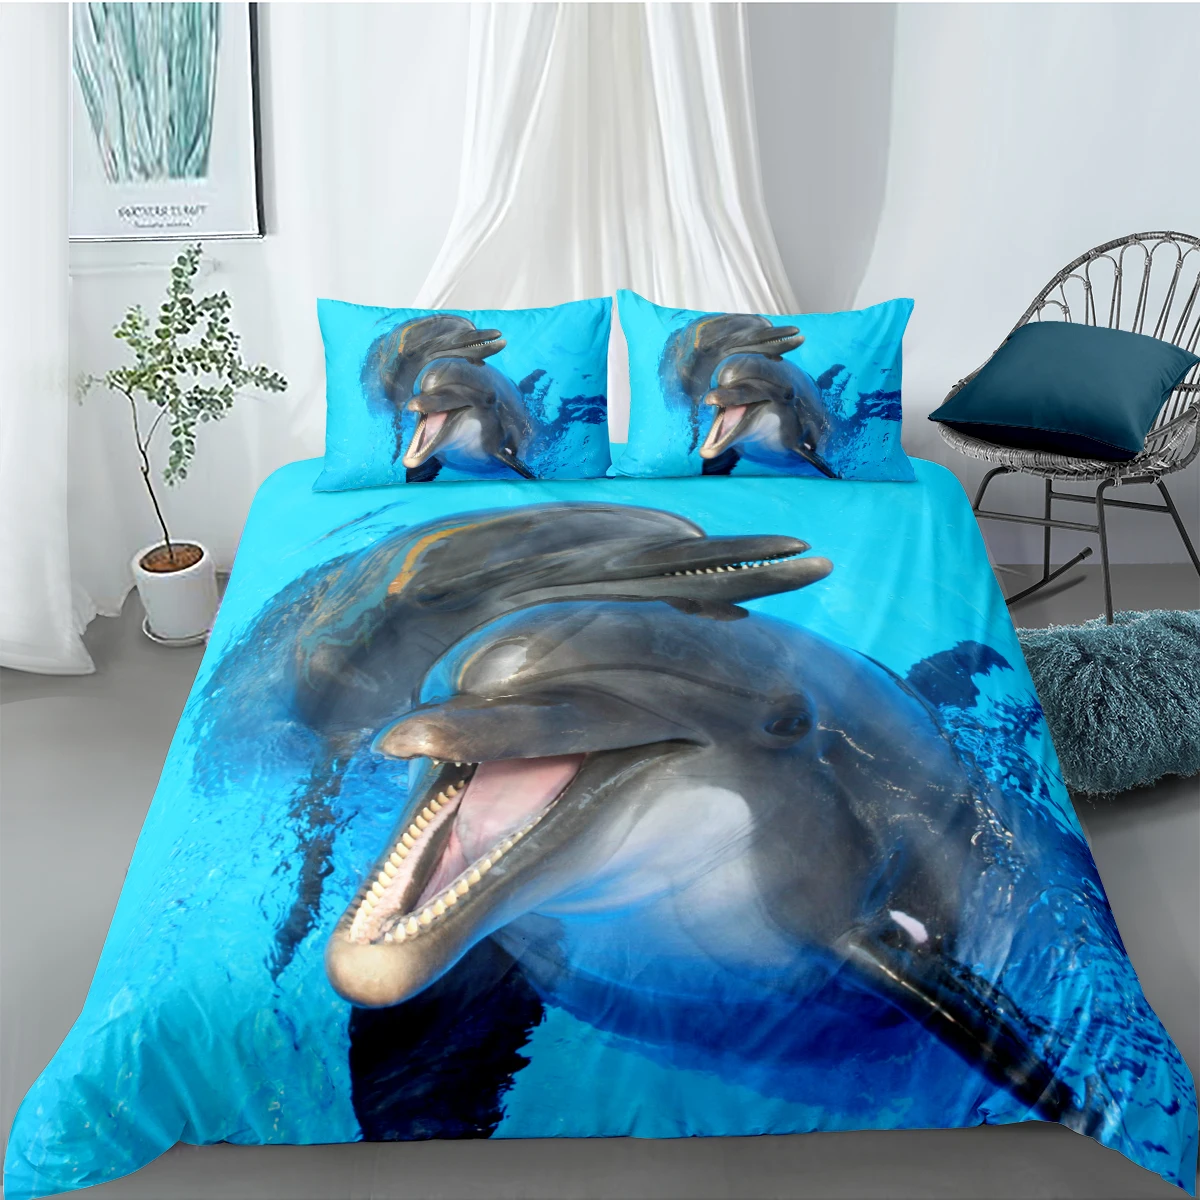 3D Carpetă Acopere Seturi Plapuma Acoperă Mângâietor Cazul Set de lenjerie de Pat Set Regele Regina Full Duble Twin Singură Dimensiune Blue Dolphin Lenjerie de Pat